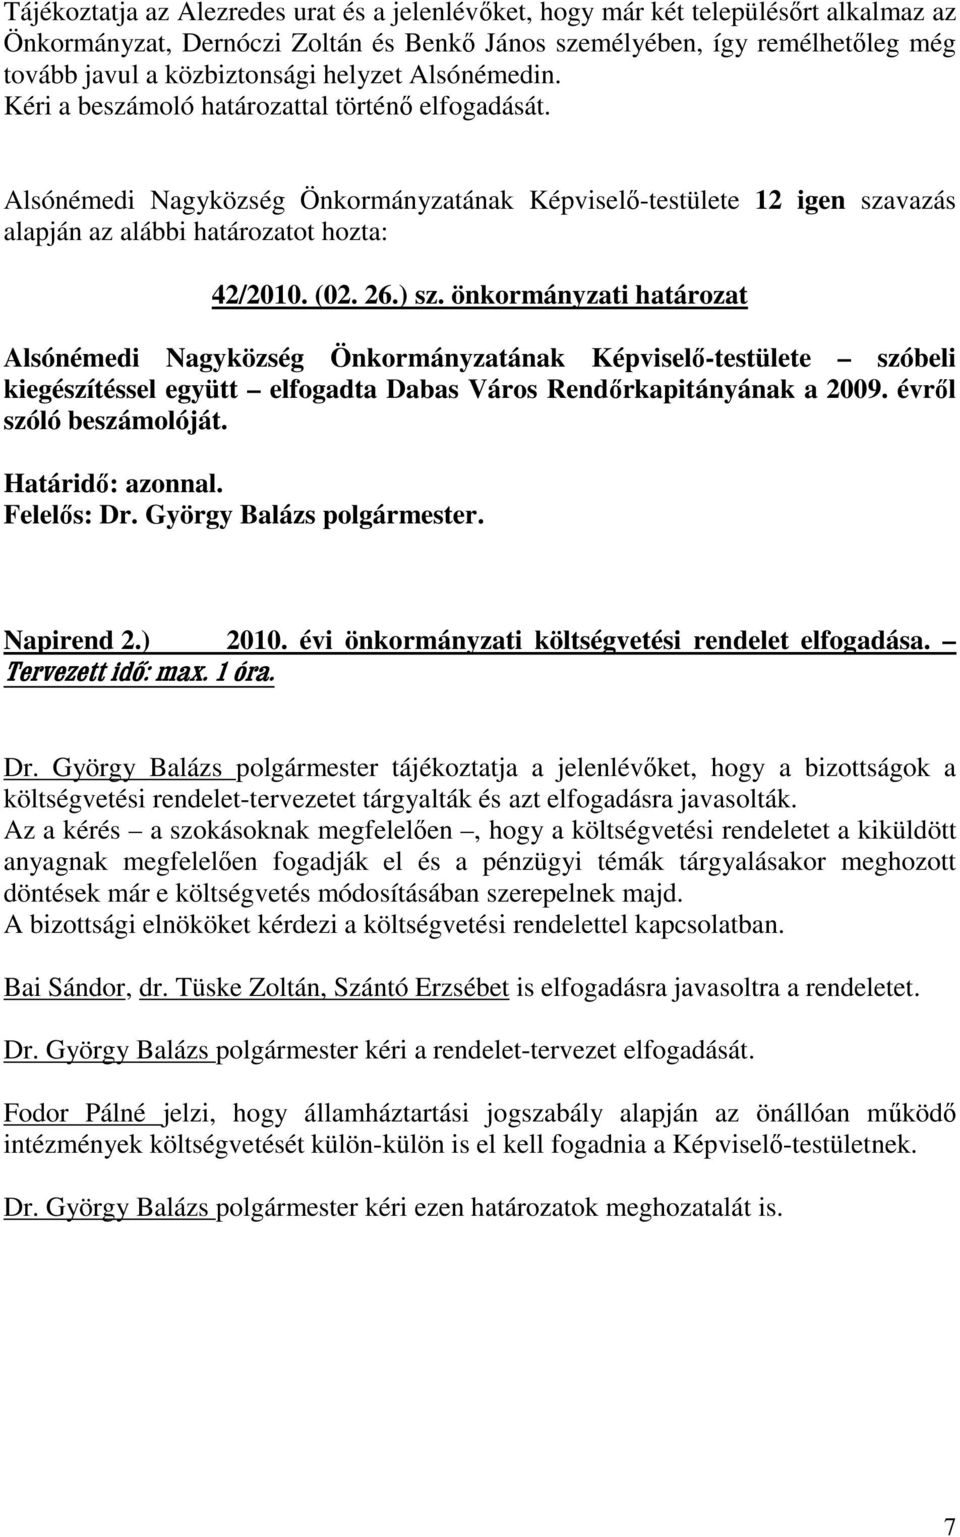 önkormányzati határozat Alsónémedi Nagyközség Önkormányzatának Képviselı-testülete szóbeli kiegészítéssel együtt elfogadta Dabas Város Rendırkapitányának a 2009. évrıl szóló beszámolóját. Napirend 2.